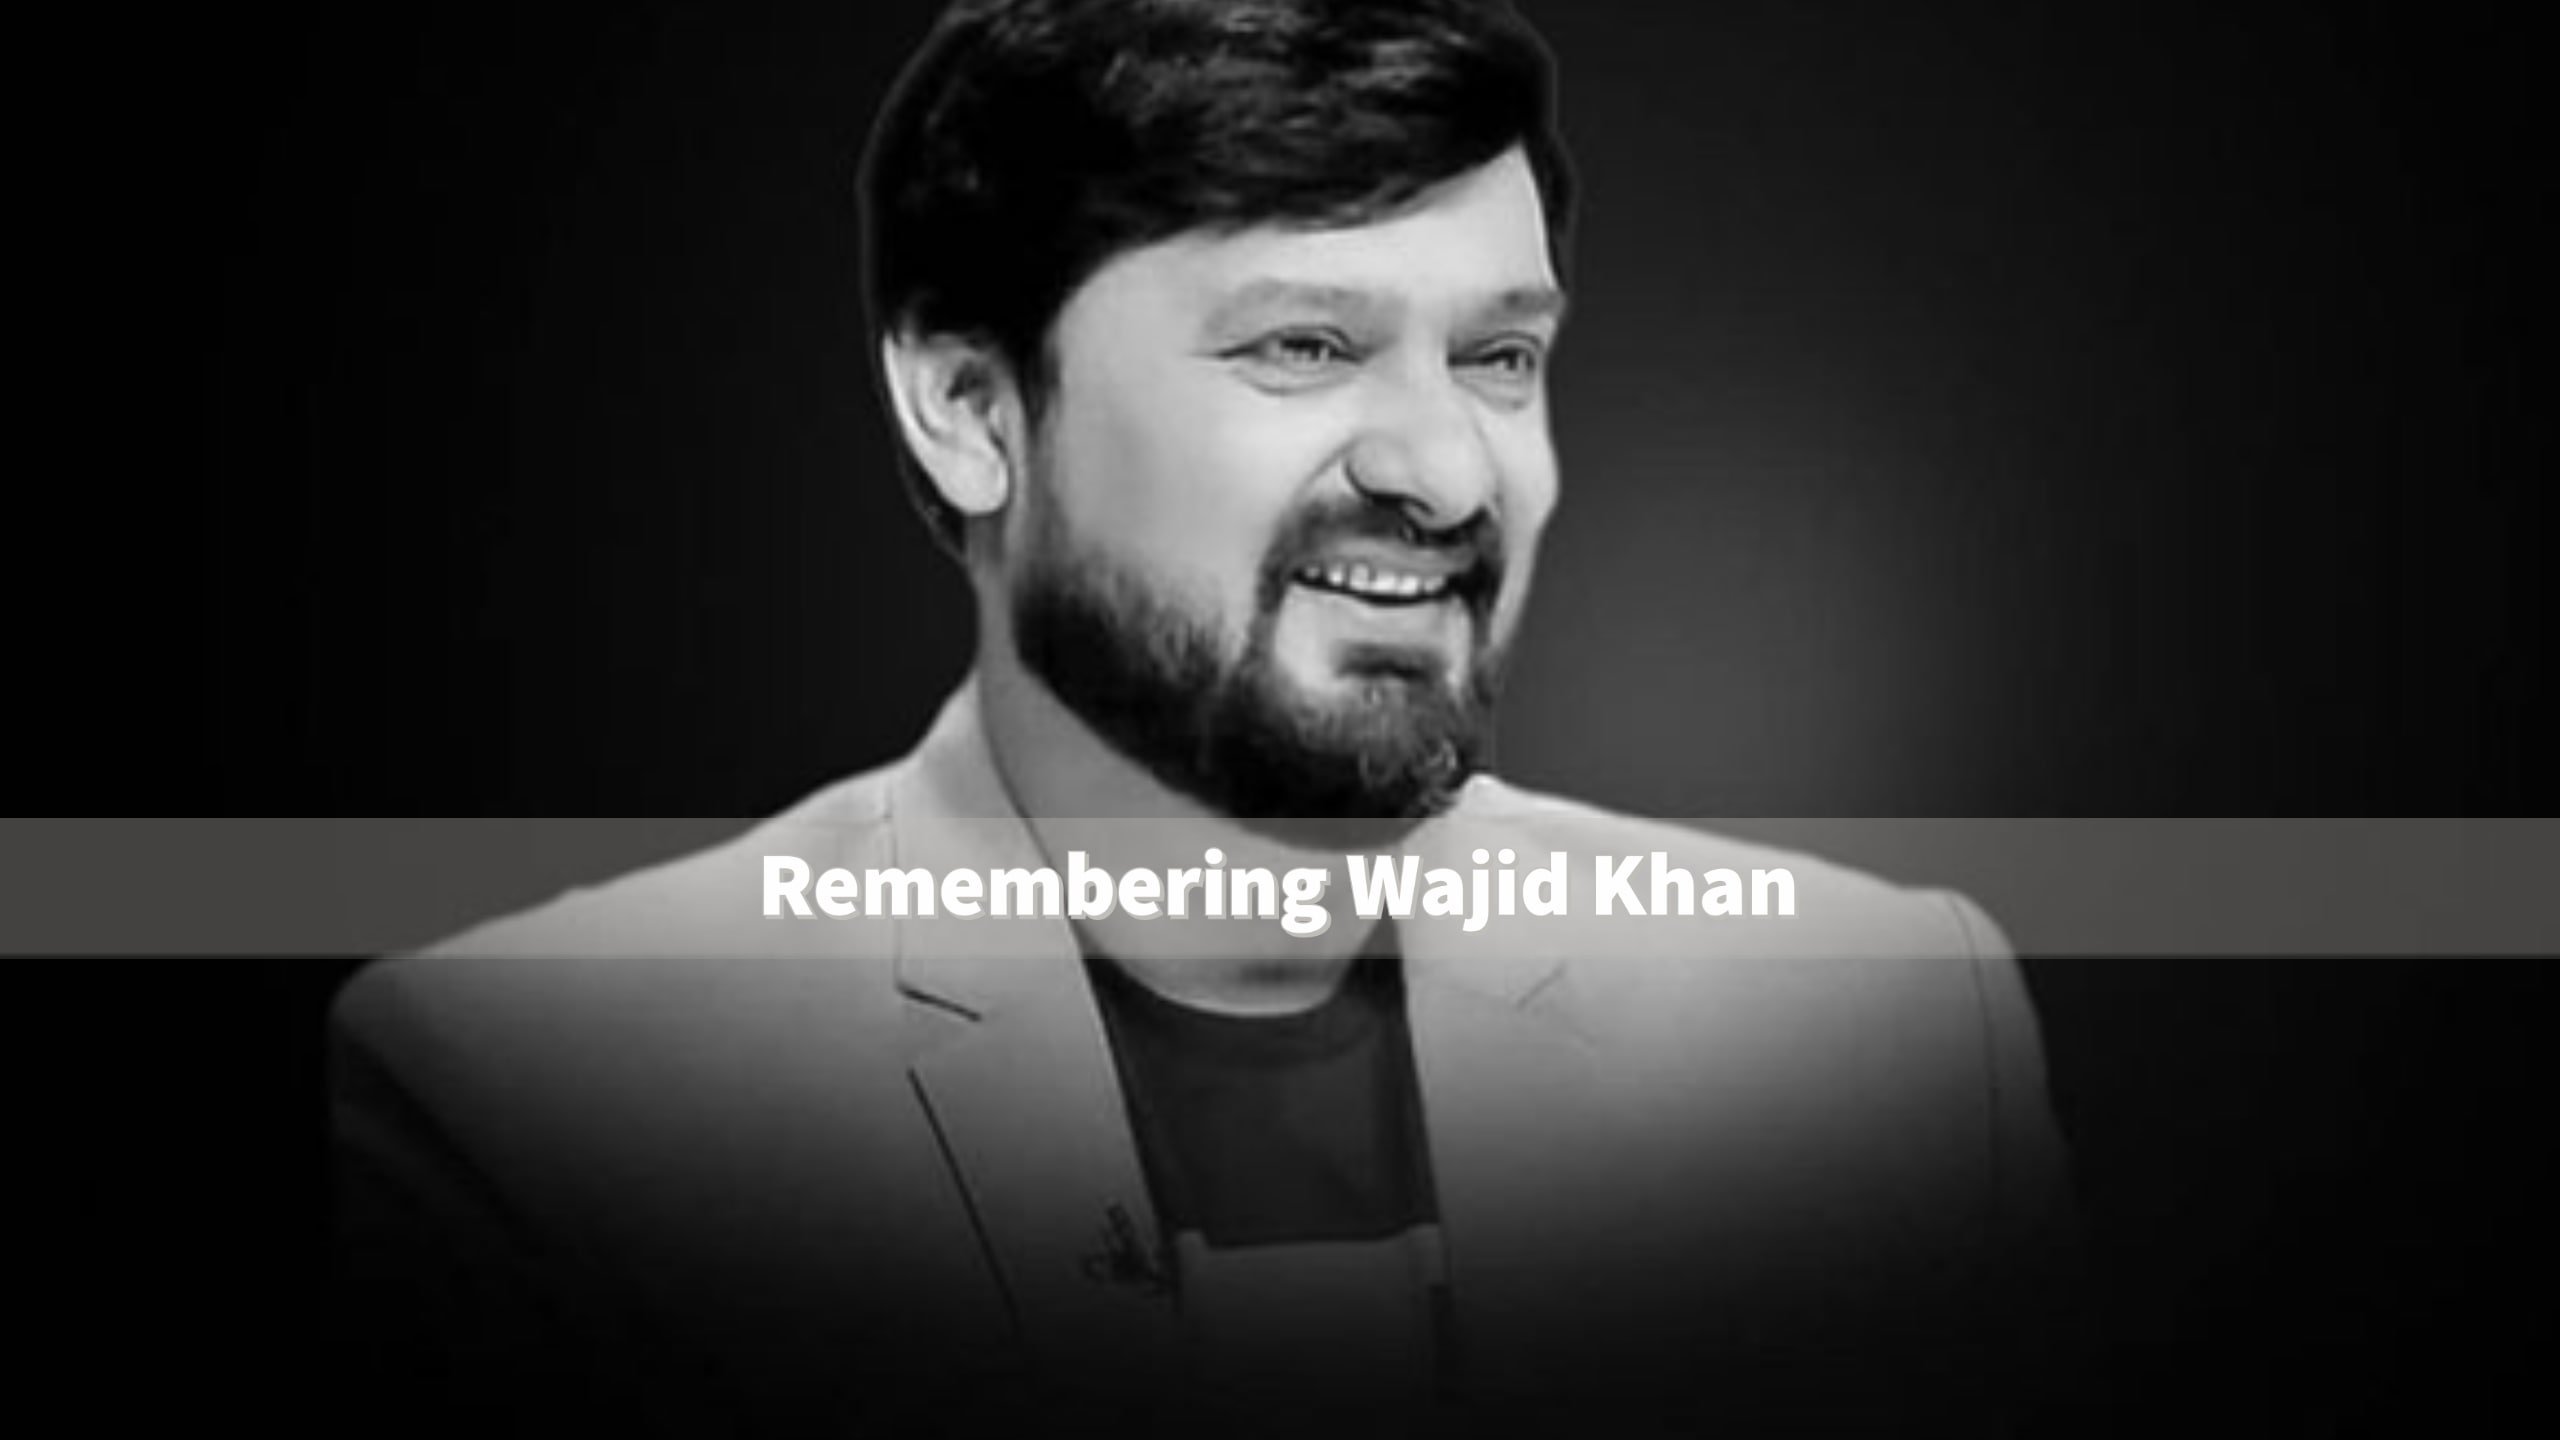 wajid khan death